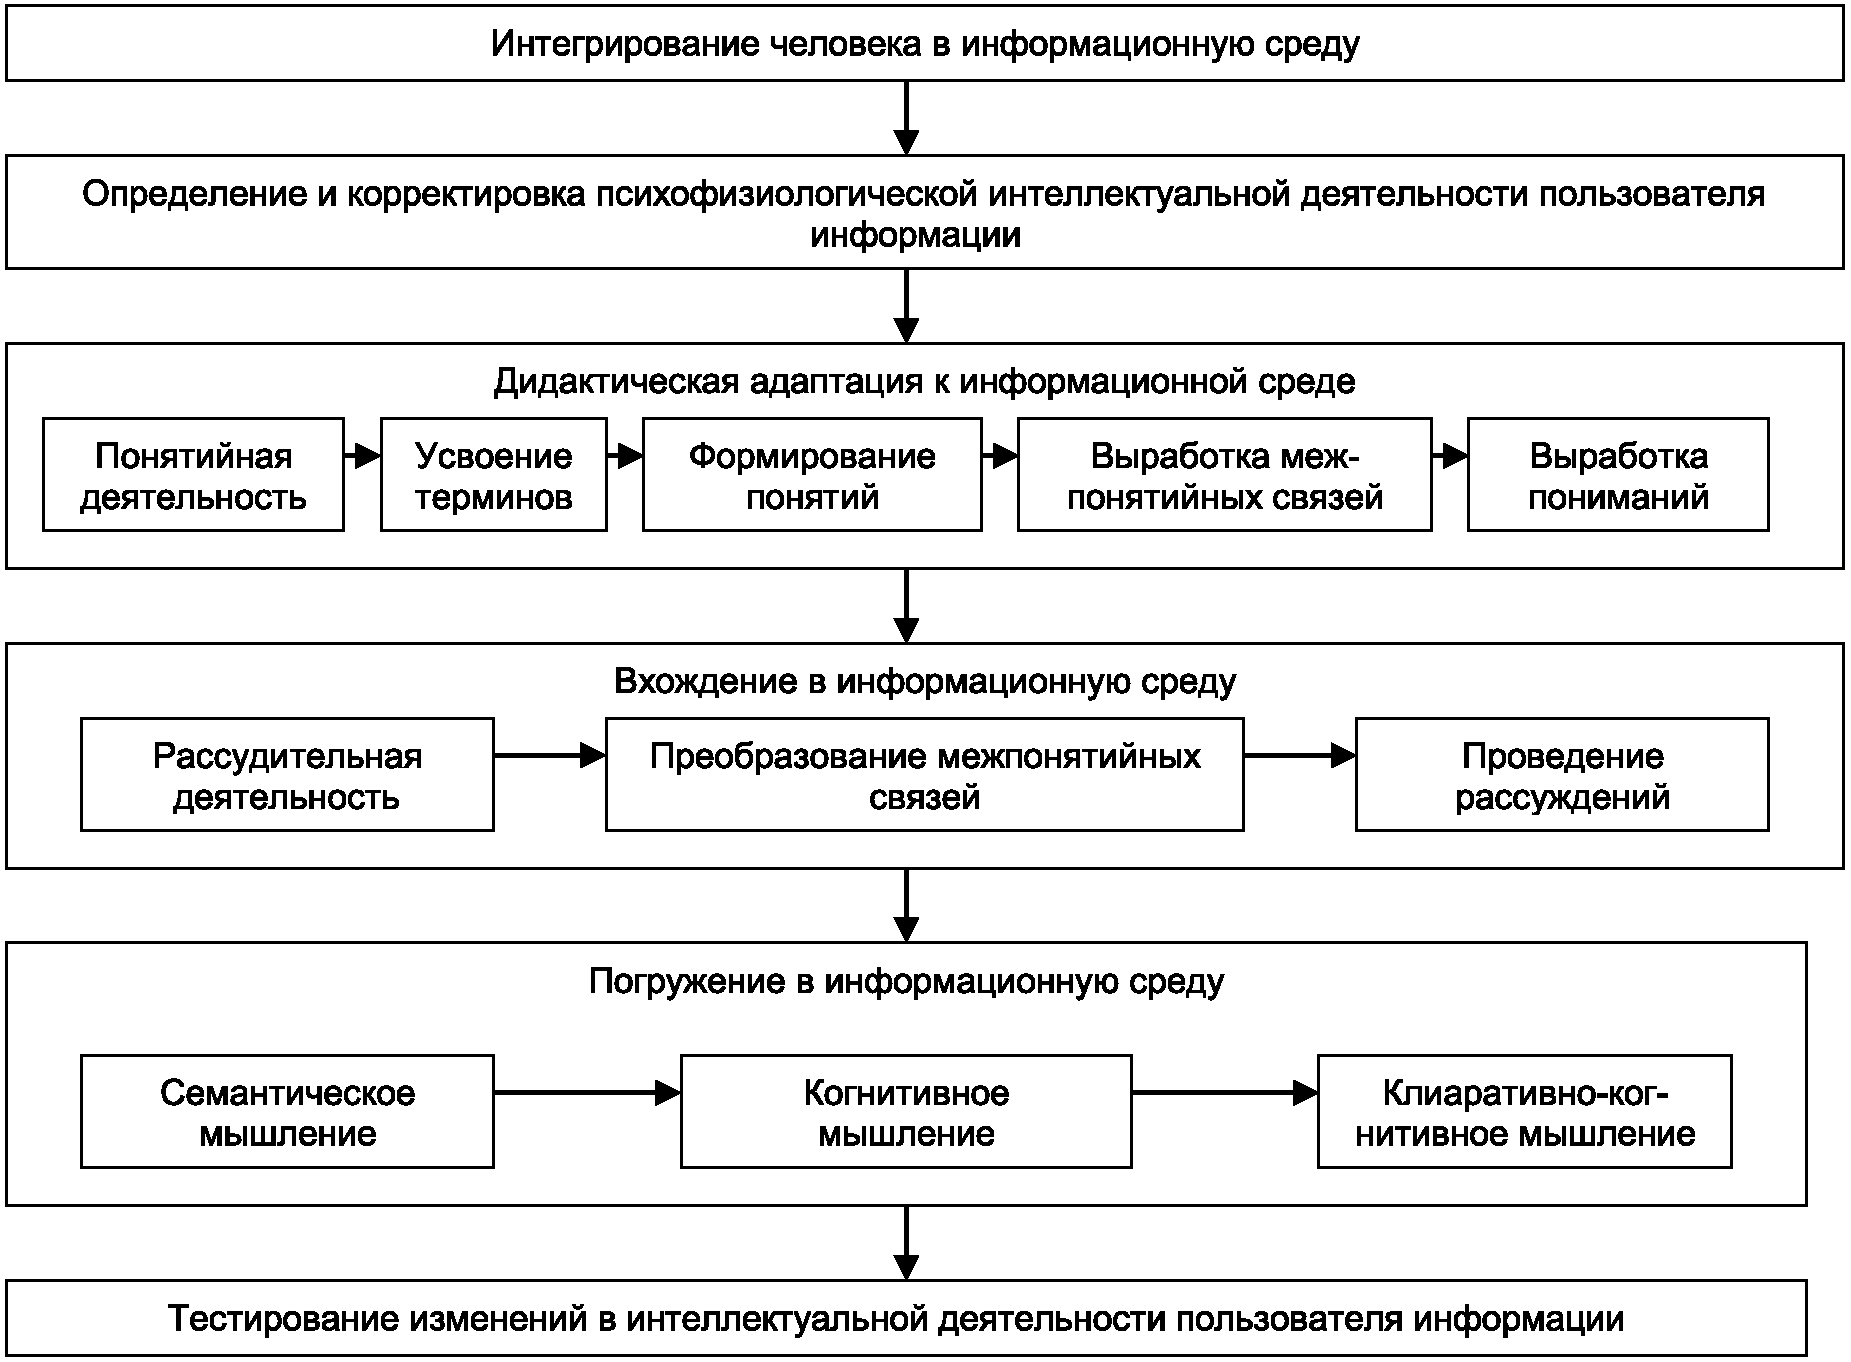 Информационное обеспечение выборов в Российской Федерации.